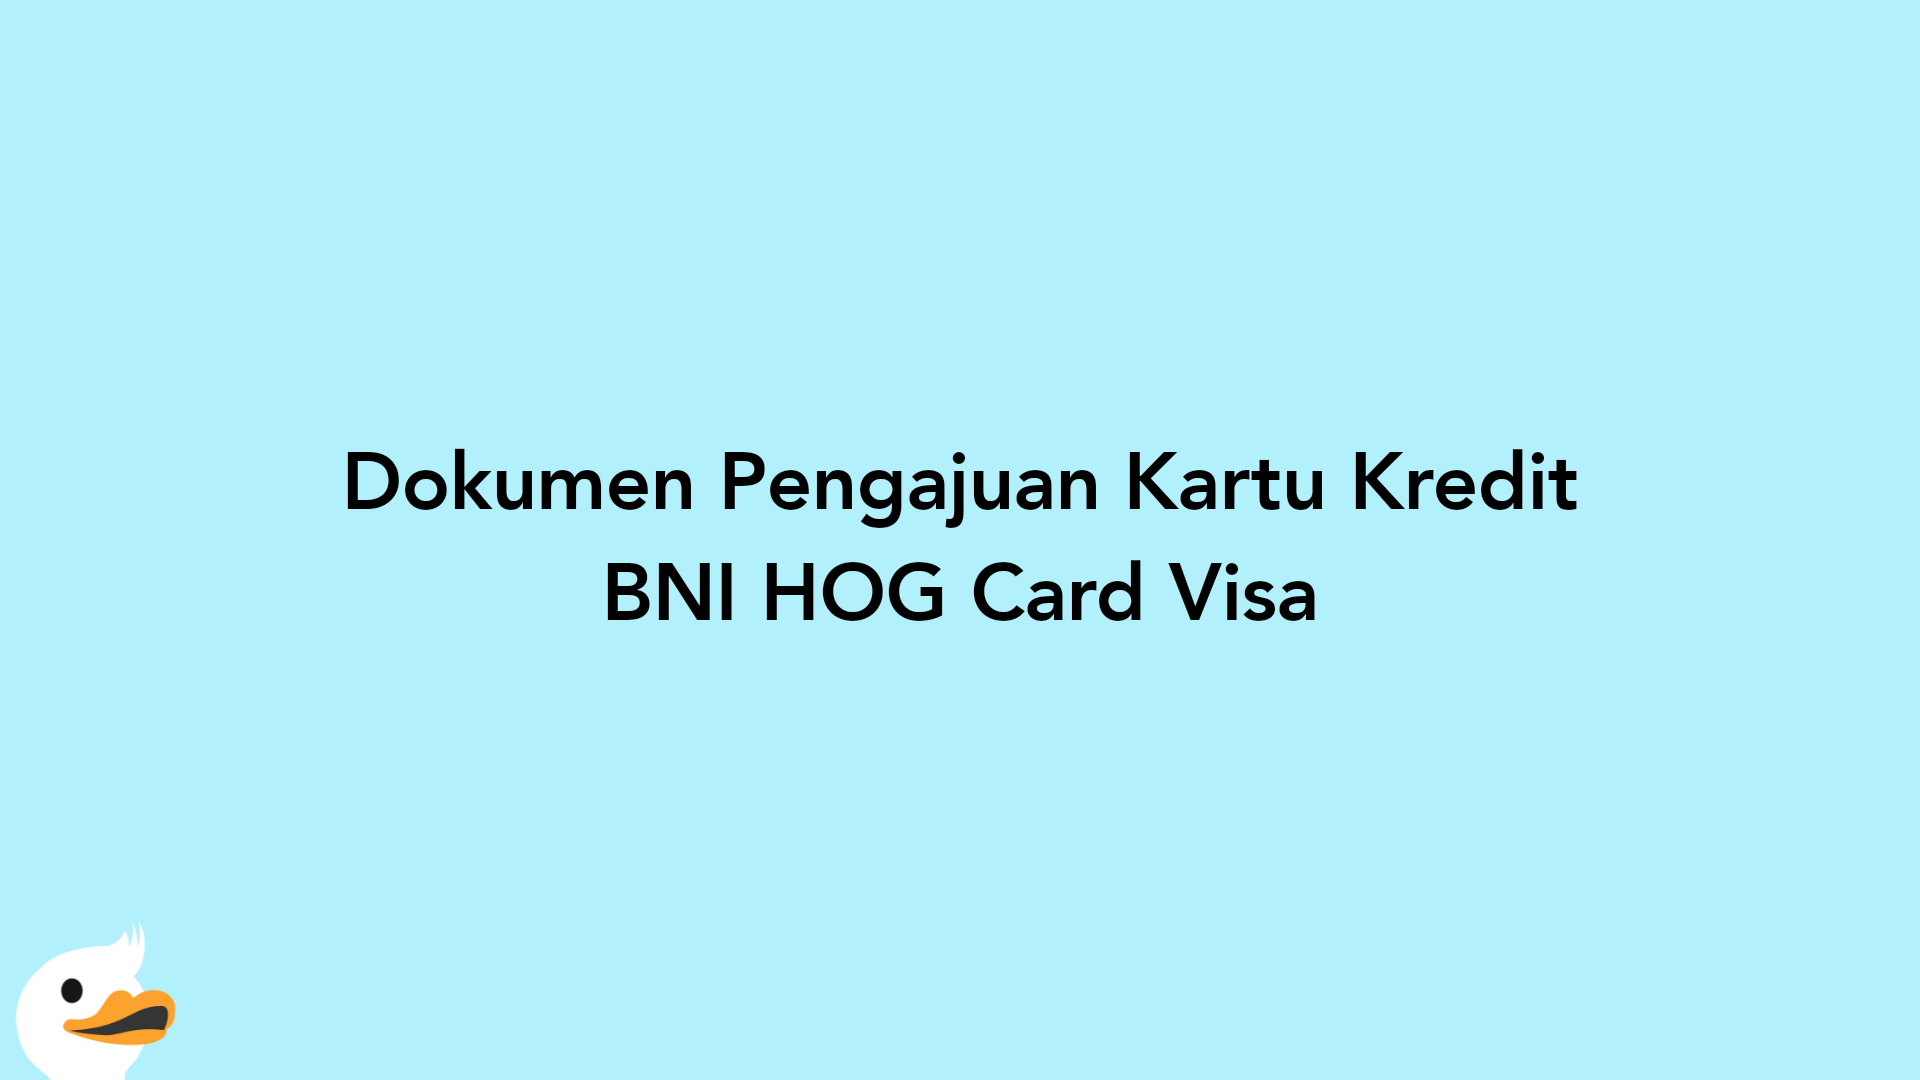 Dokumen Pengajuan Kartu Kredit BNI HOG Card Visa